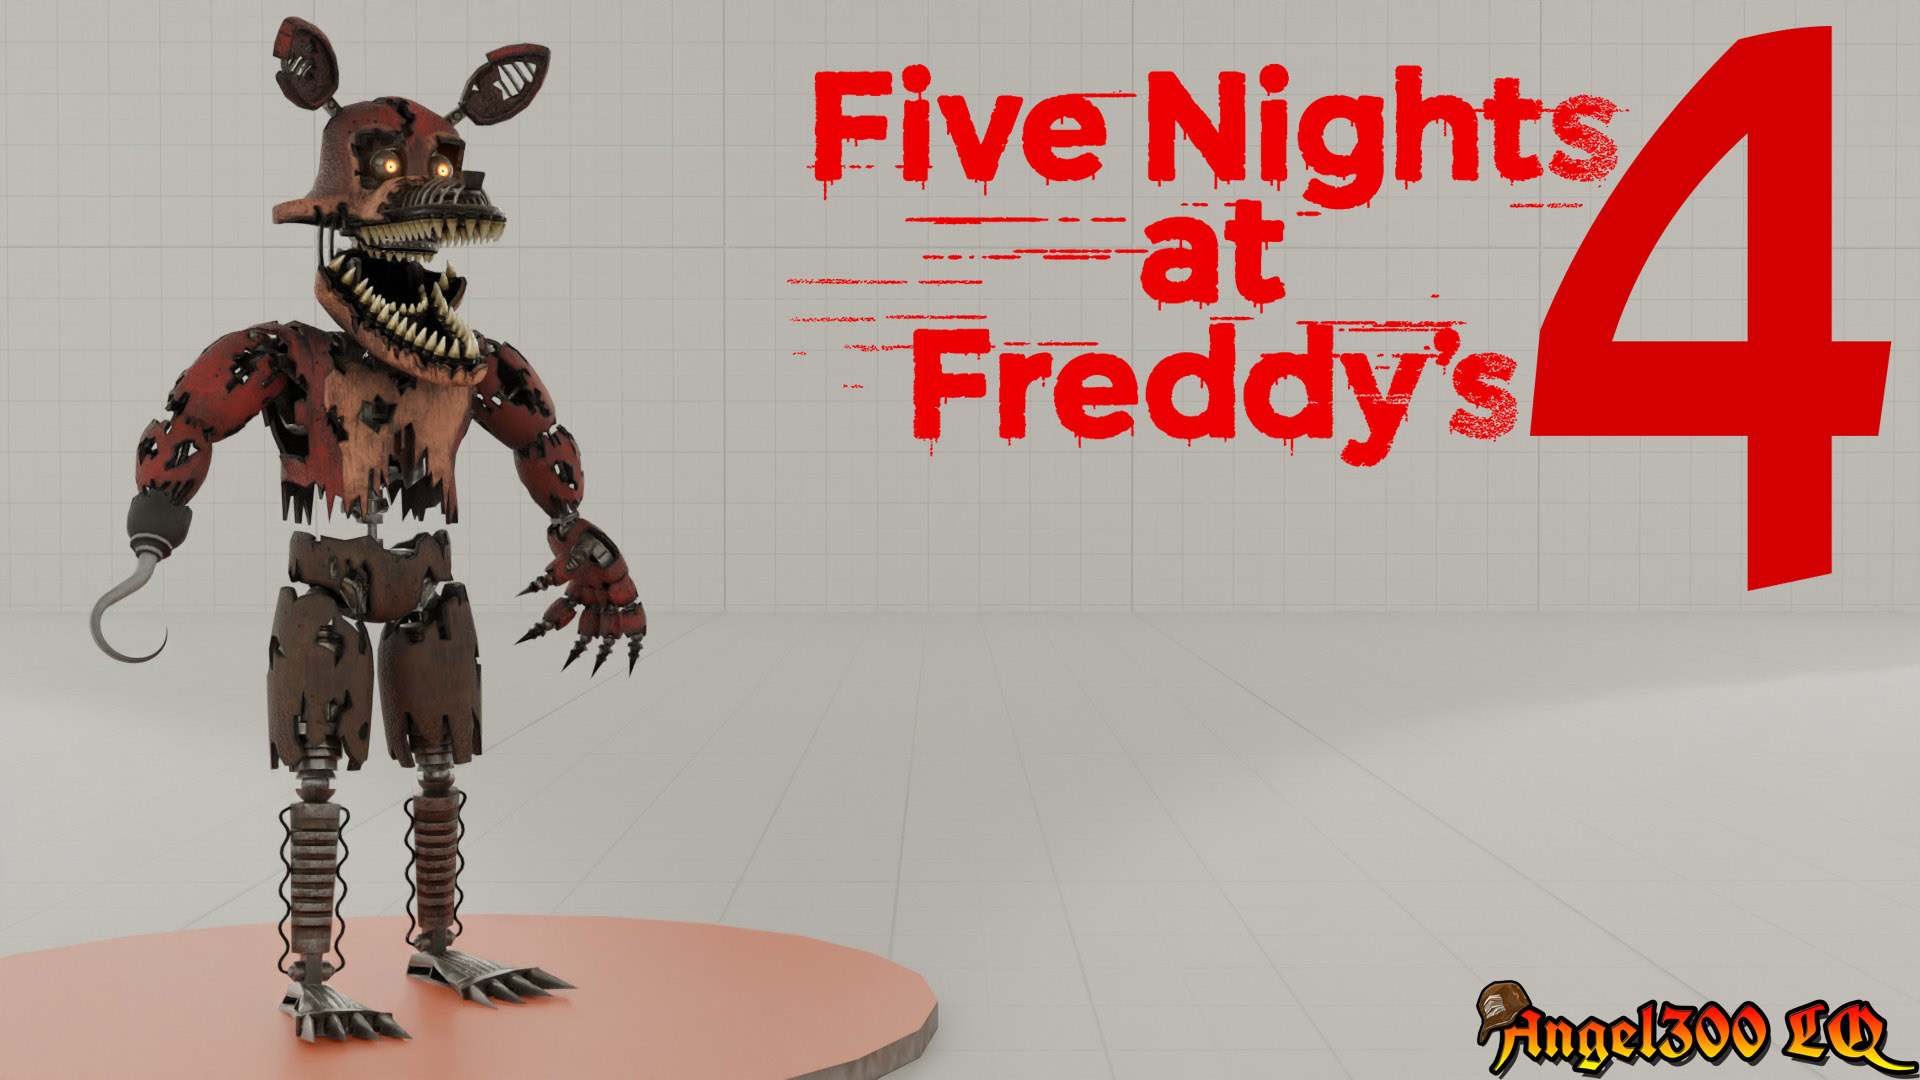 Nightmare Freddy 2.0 in FNaF4!! by HeroGollum on DeviantArt